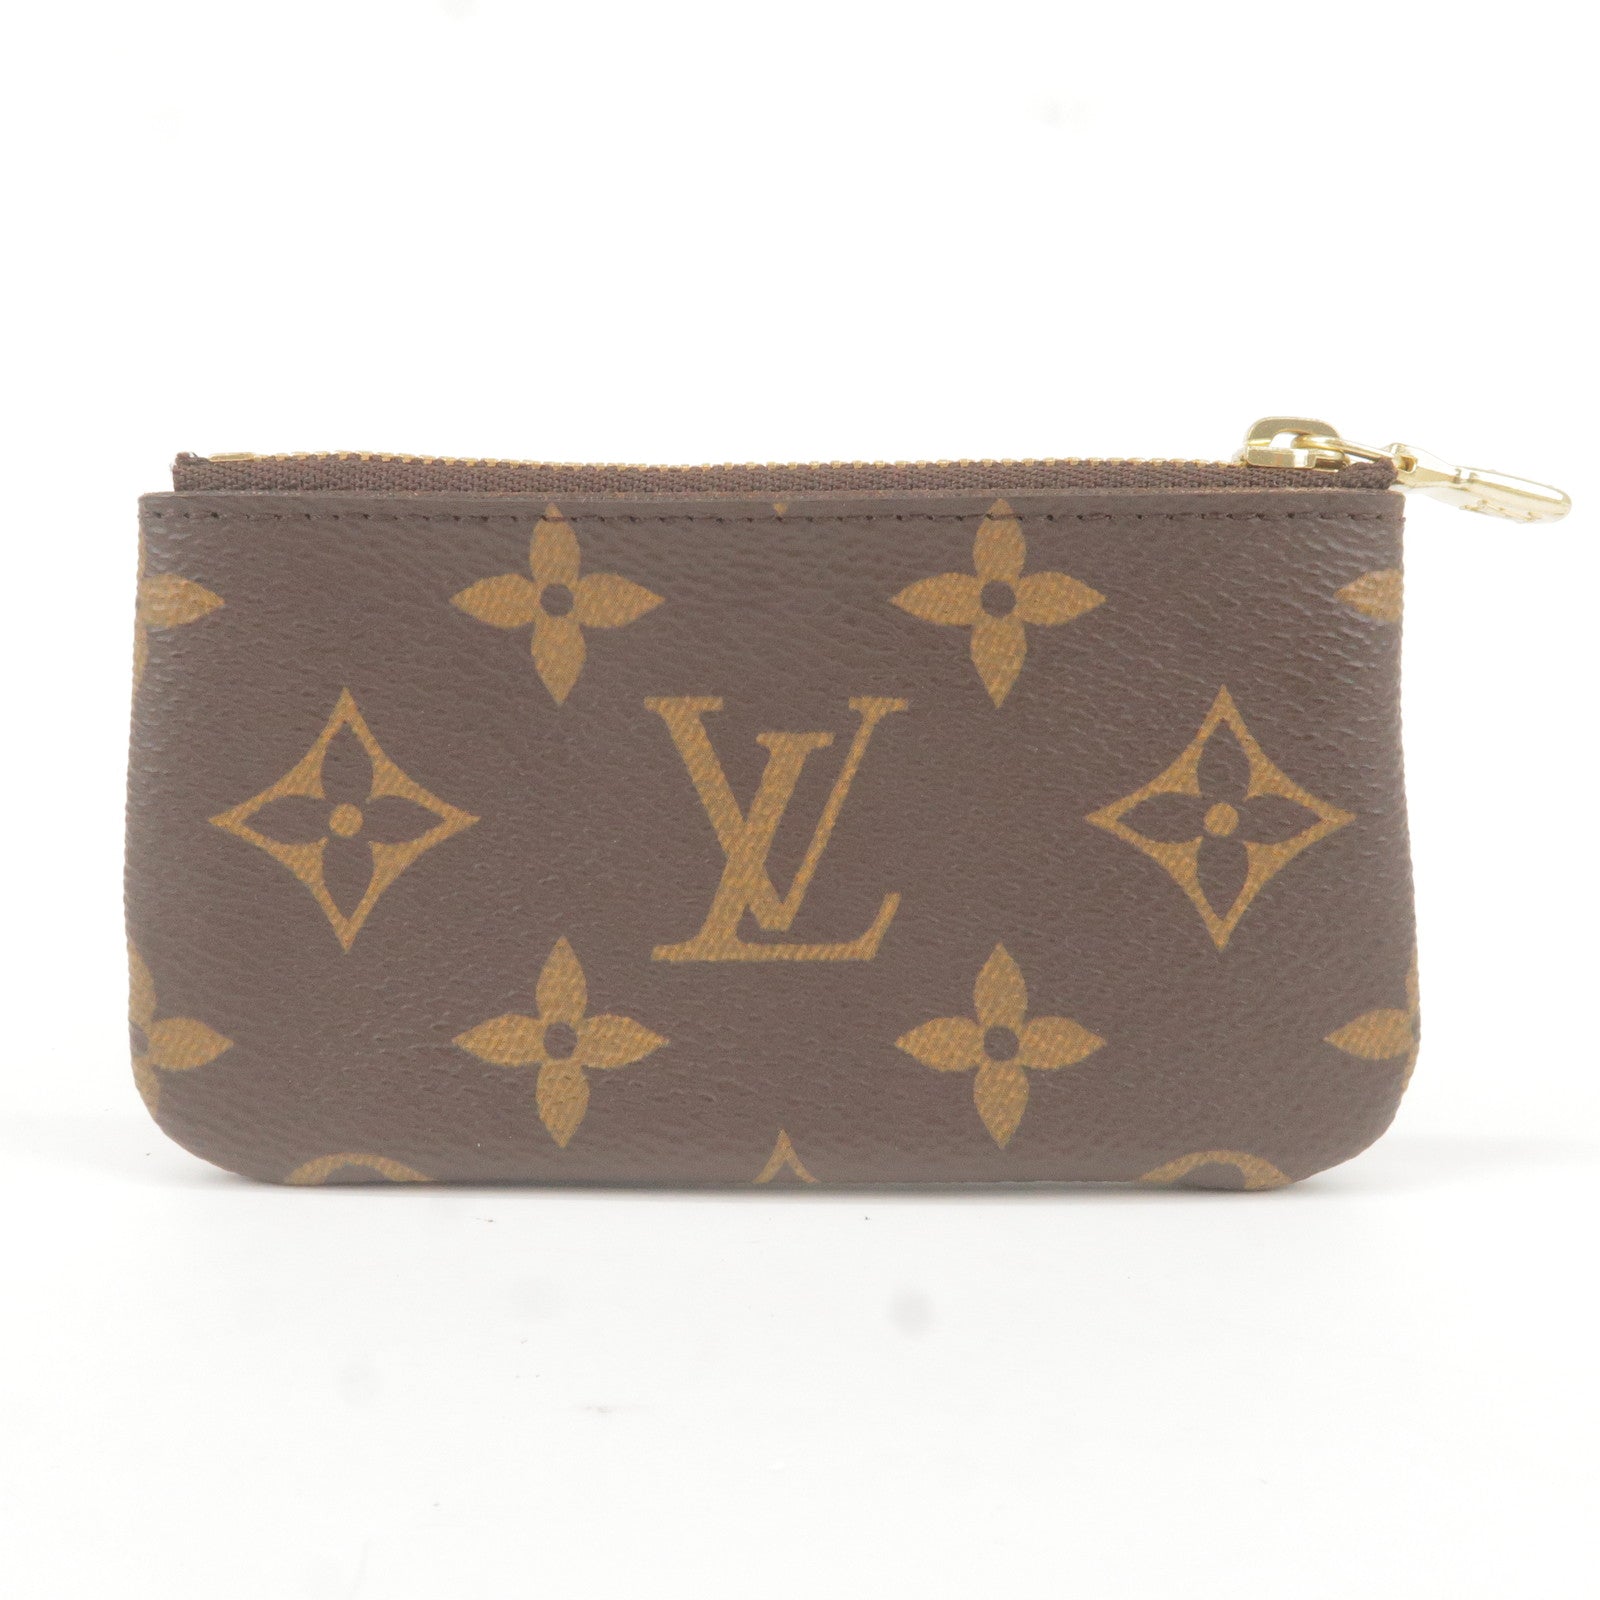 Louis Vuitton 1992 pre-owned Tilsitt Belt Bag - Farfetch